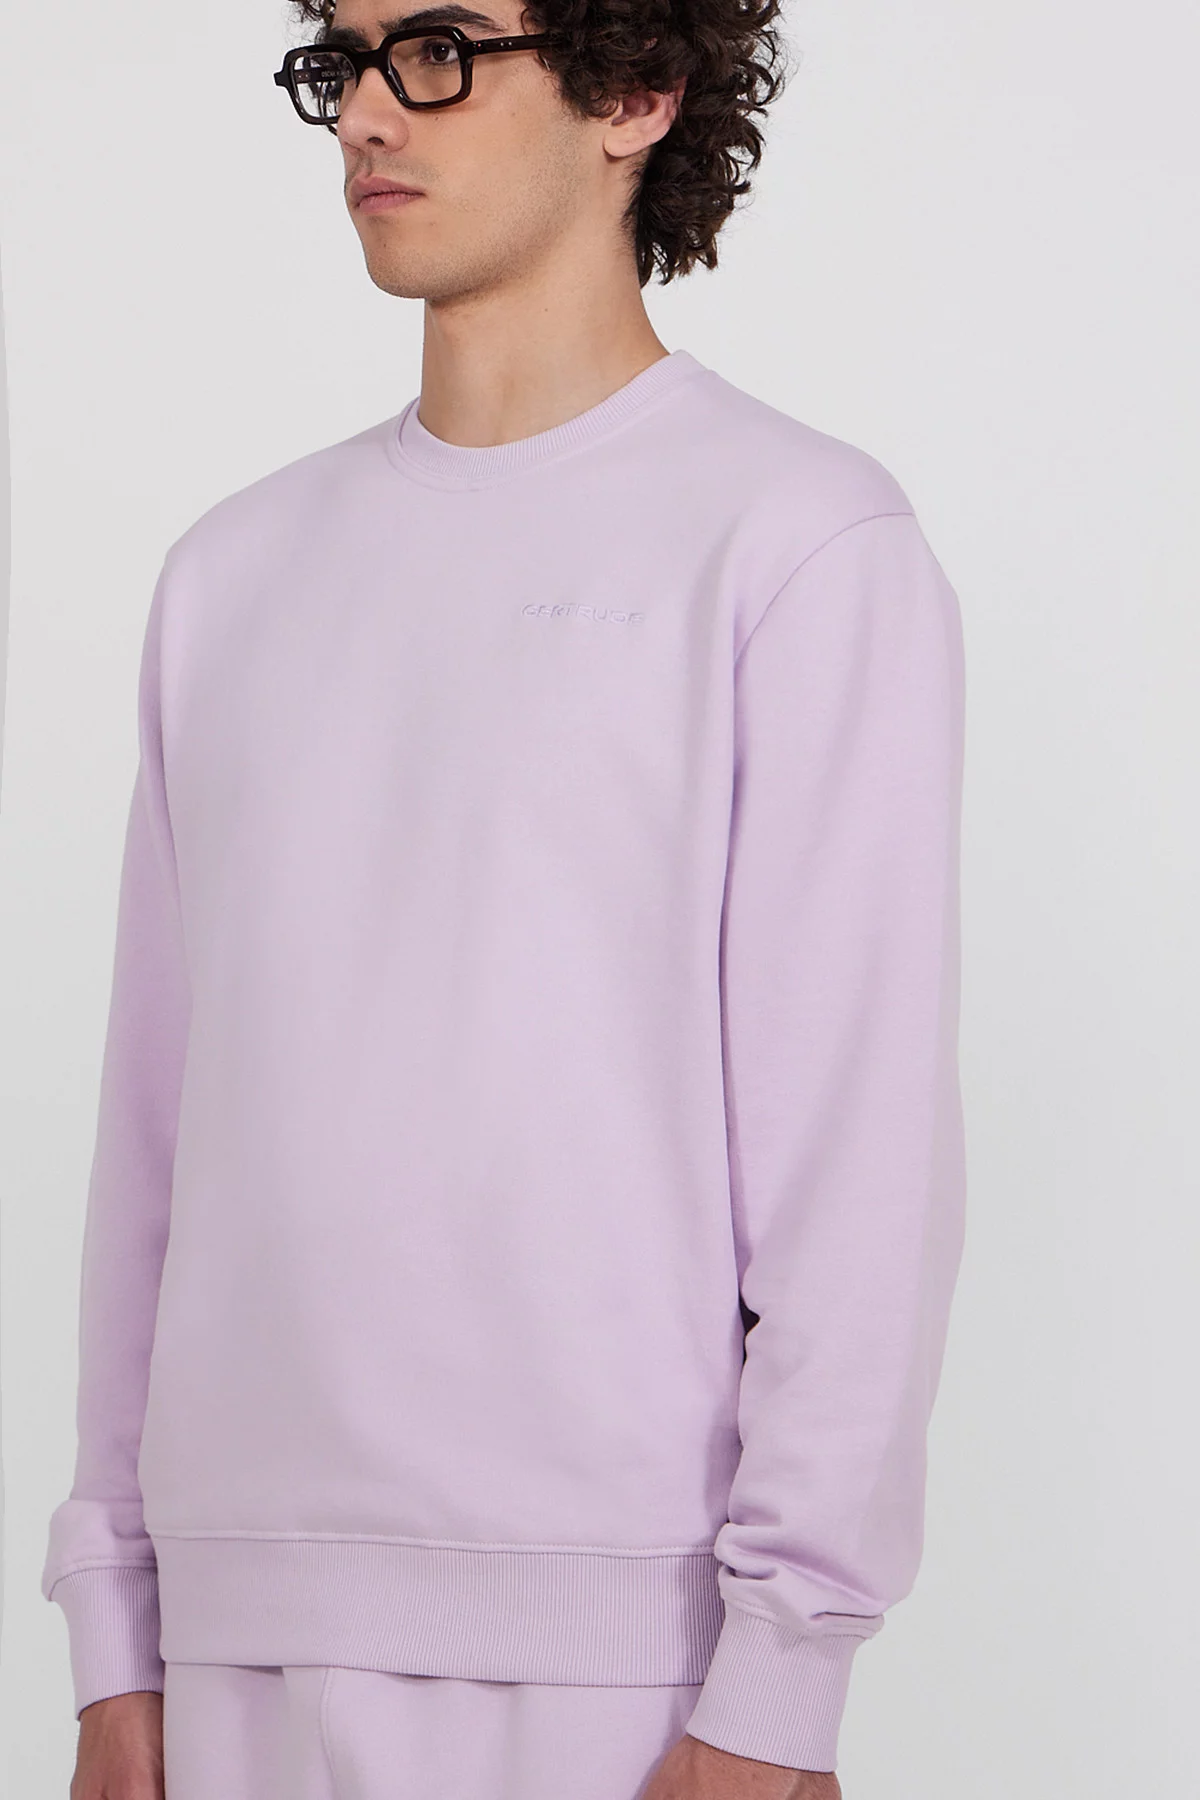 Guillaume Br unisex round neck sweatshirt